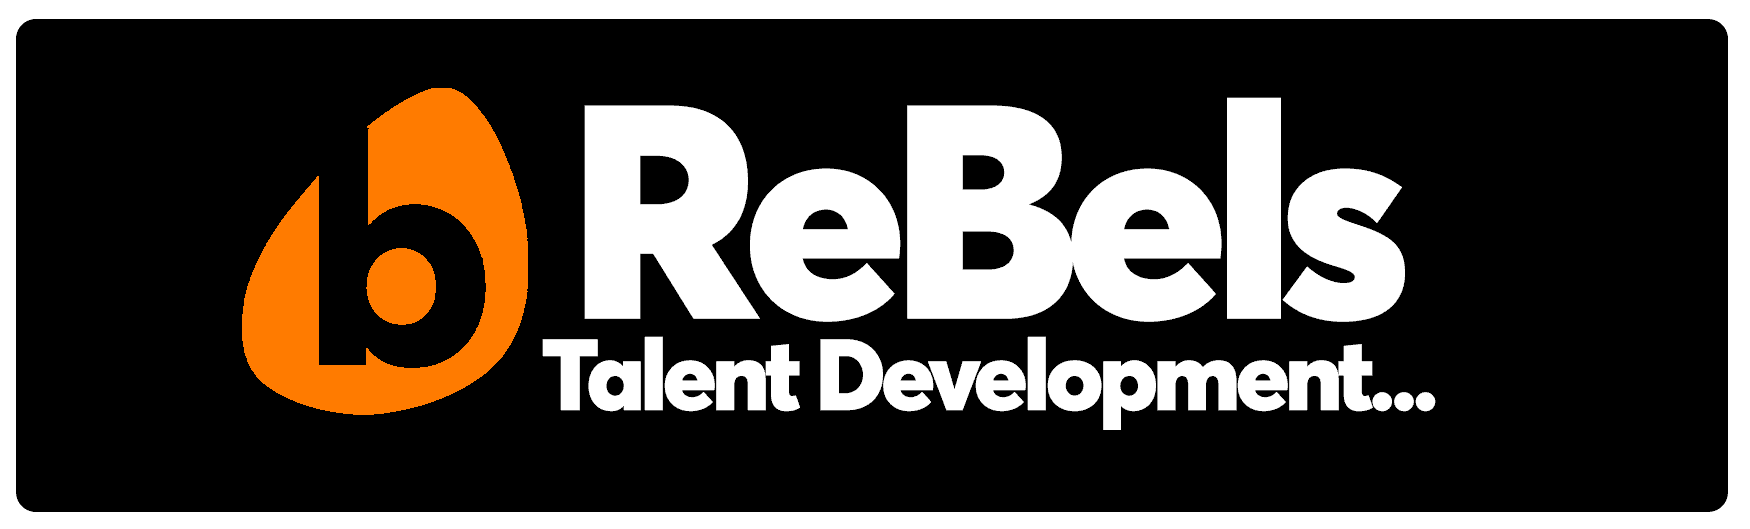 ReBels-web-banner